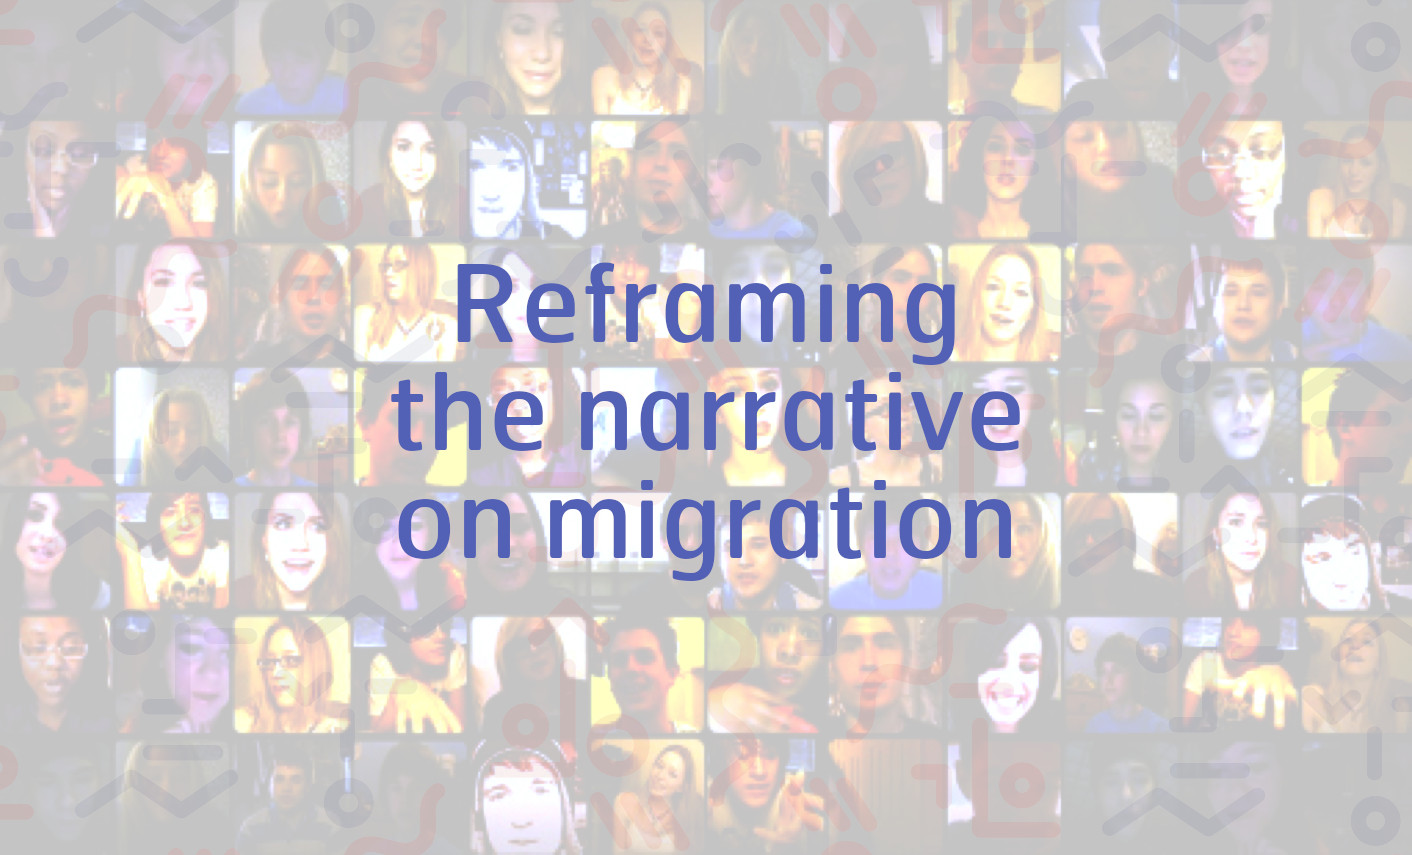 Das Narrativ zur Migration umgestalten